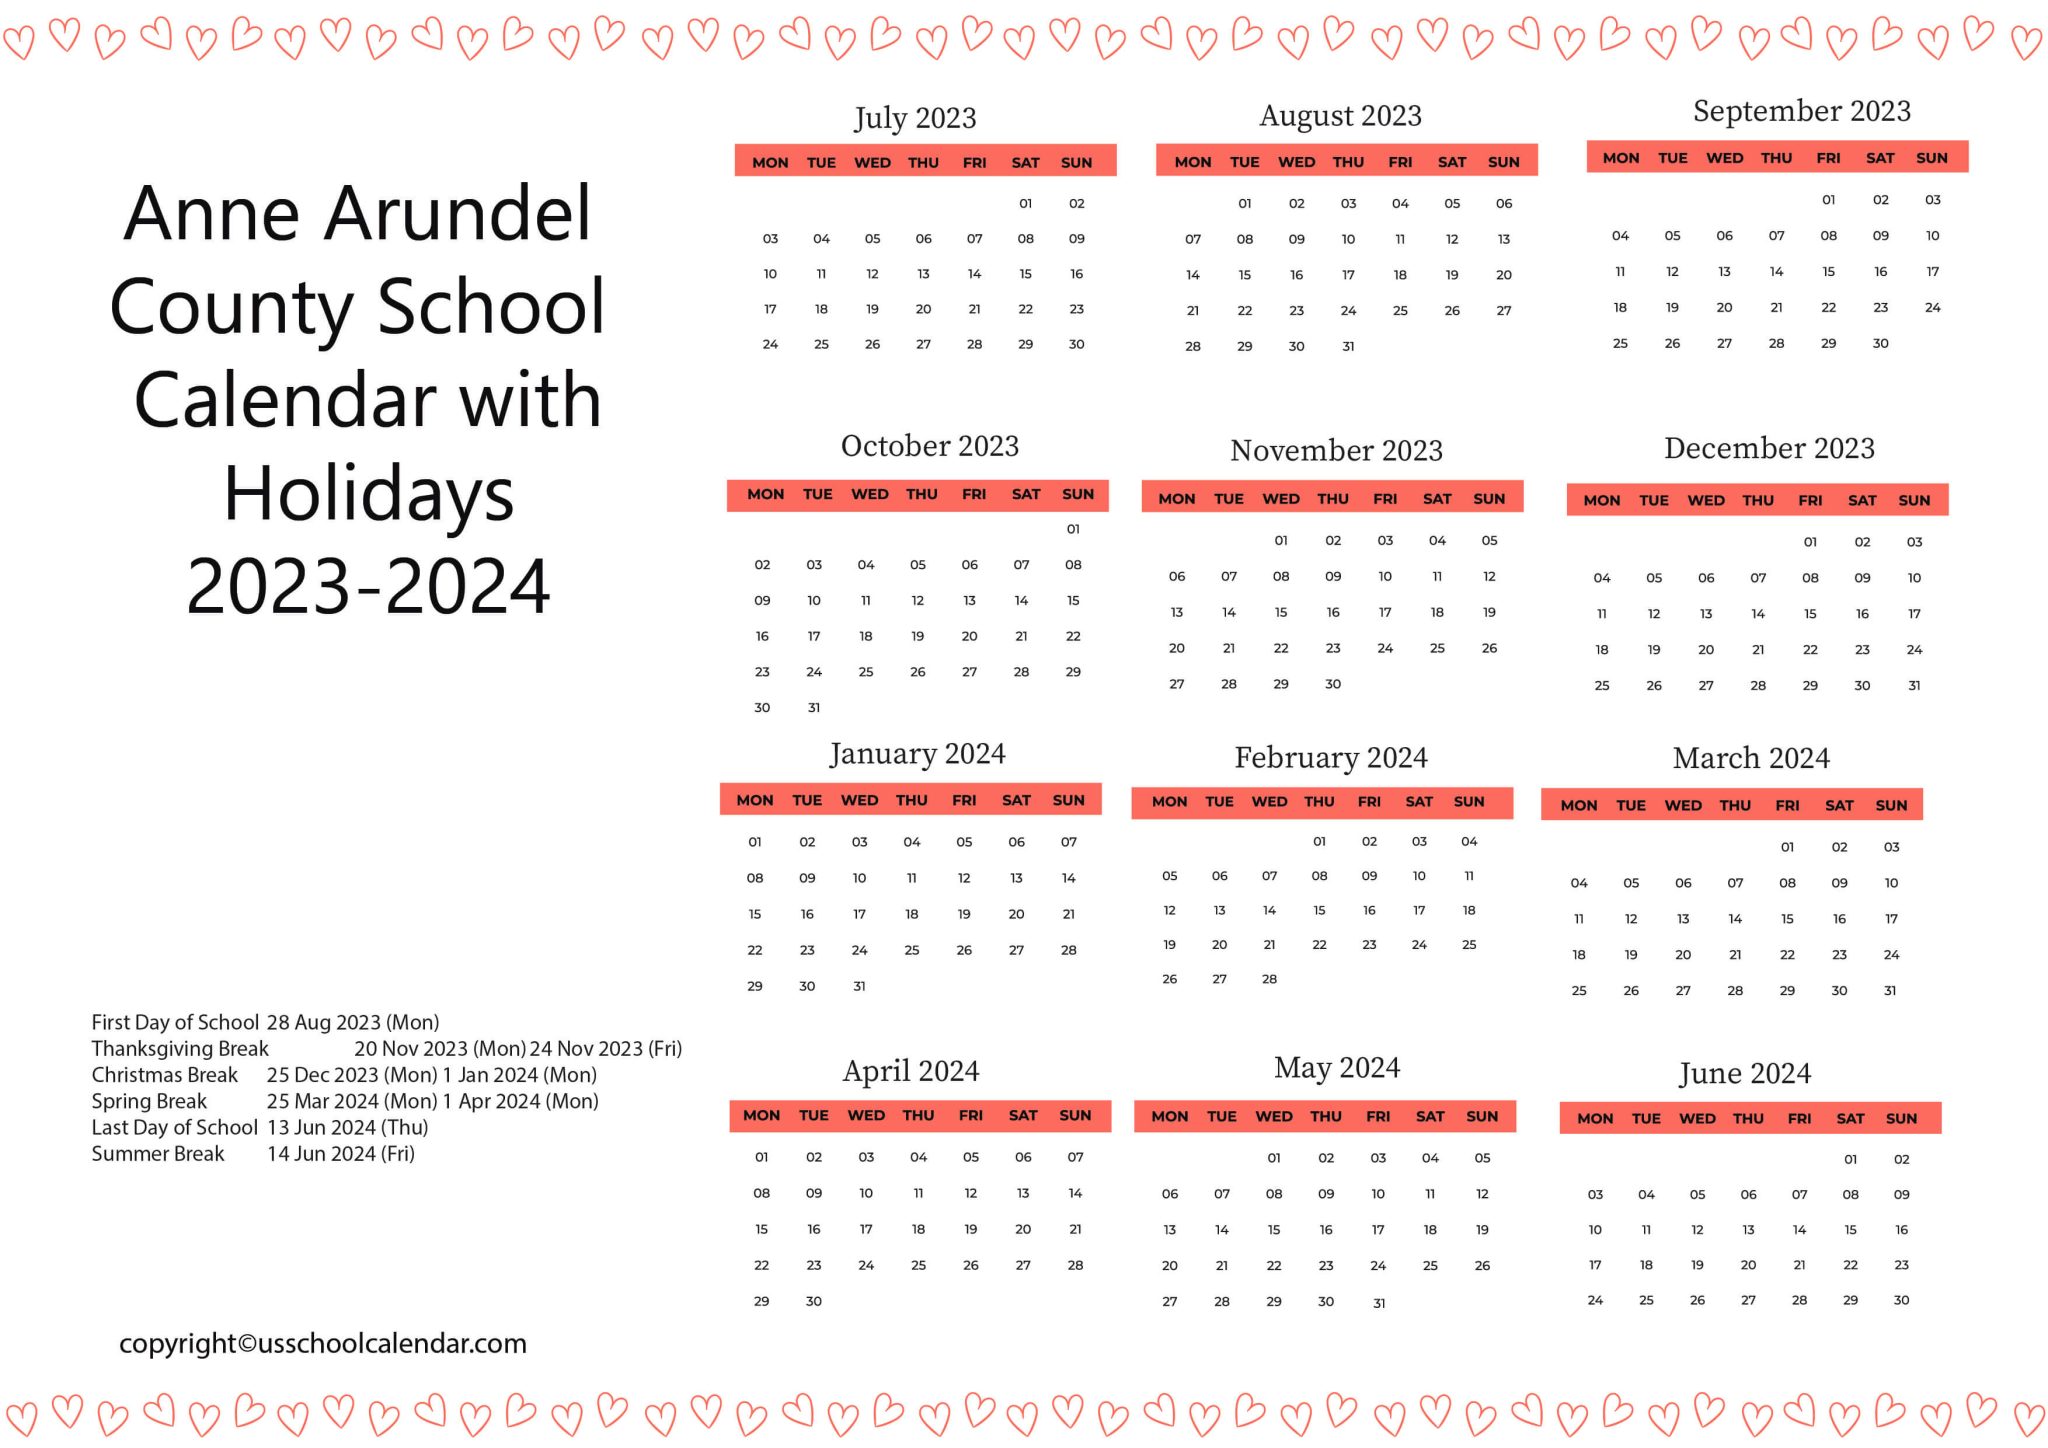 anne-arundel-county-school-calendar-with-holidays-2023-2024